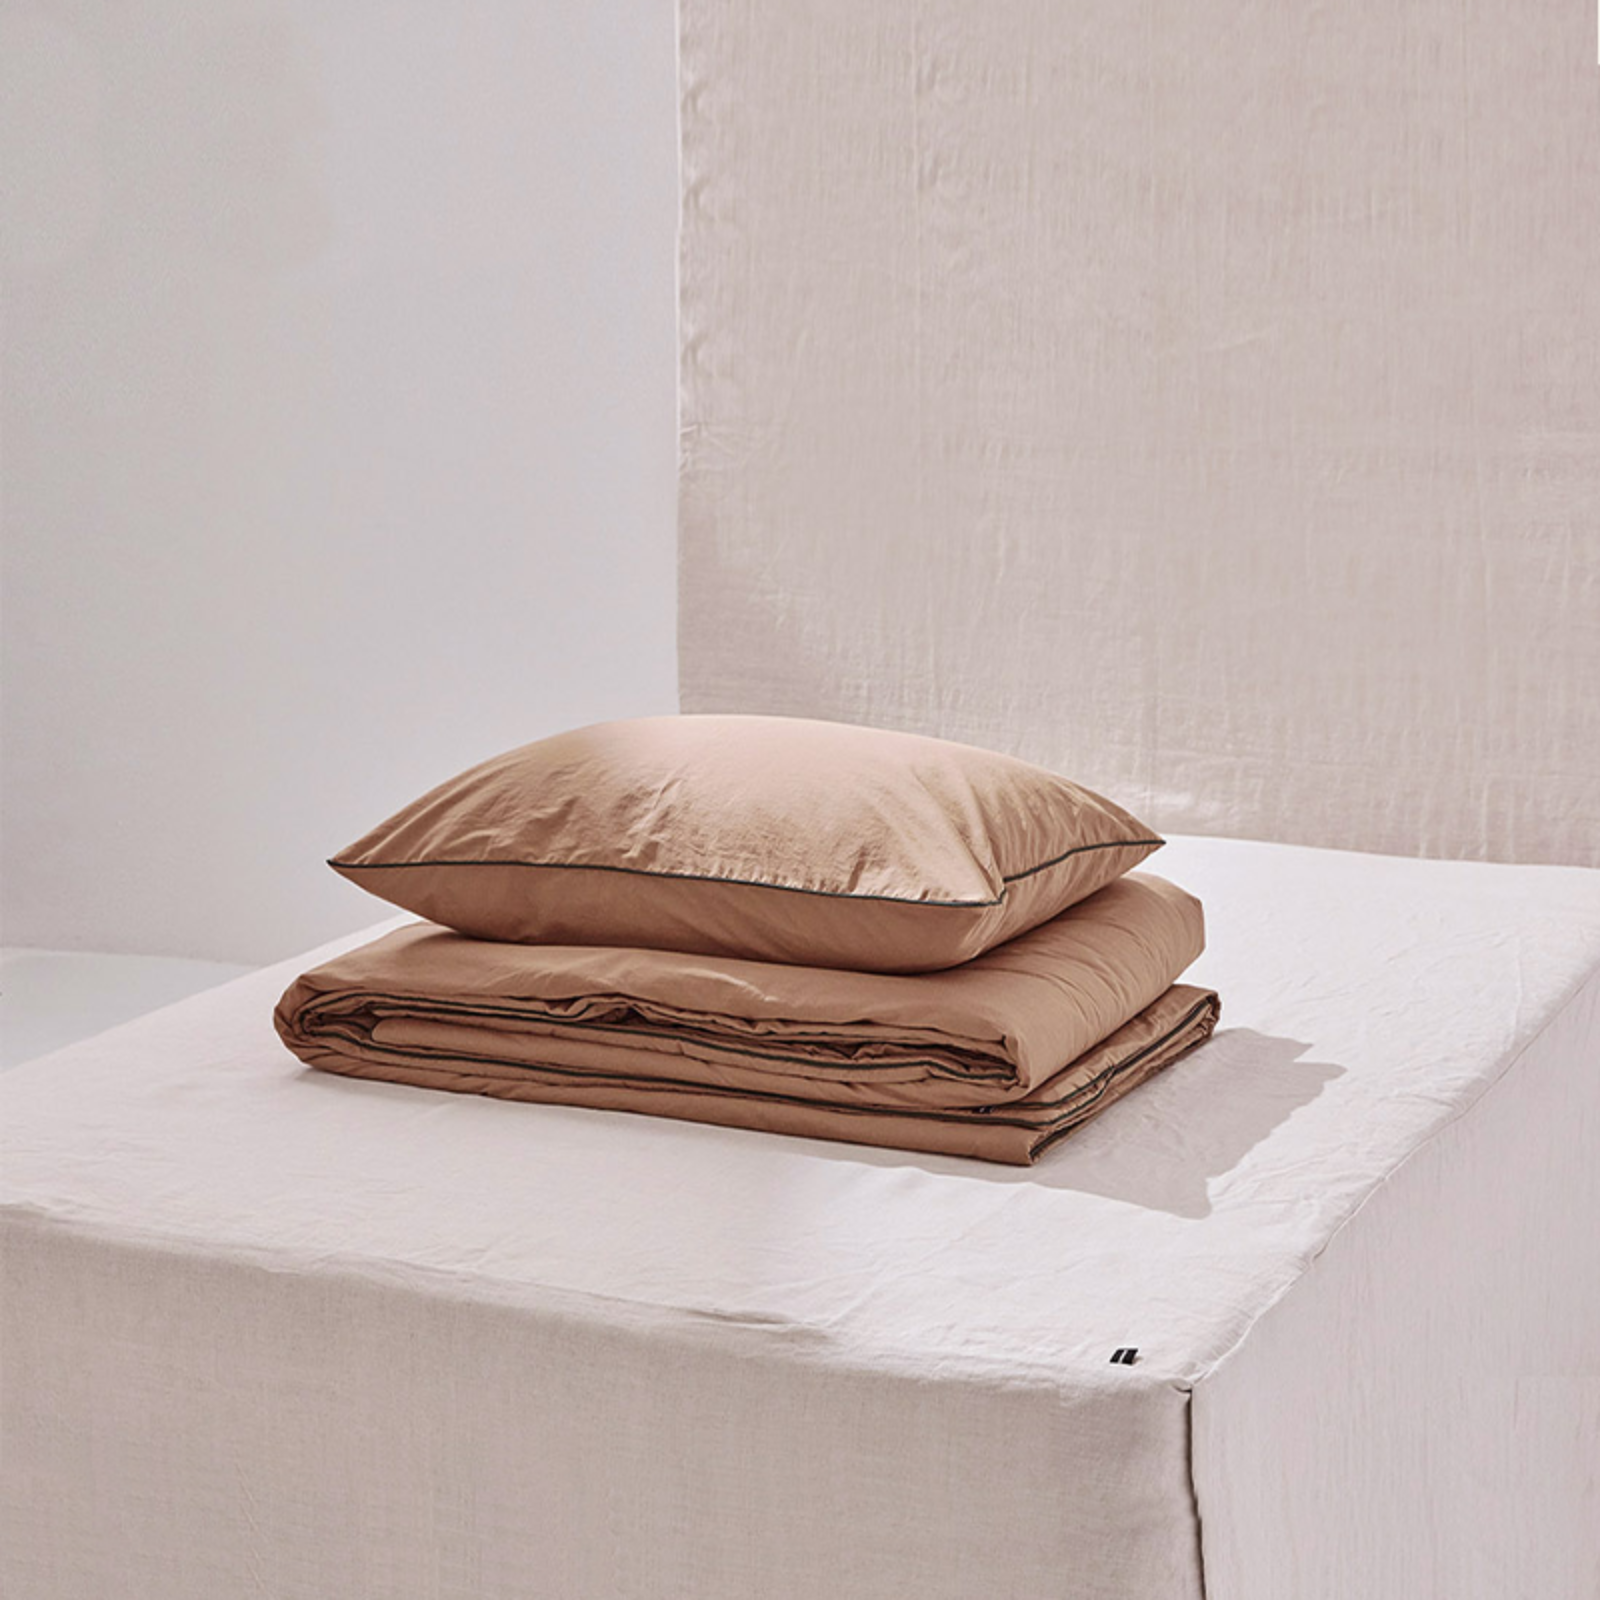 챕터원,[Spring fabric collection, 25%] 실키코튼 하모니 베딩 침구세트 - 피넛